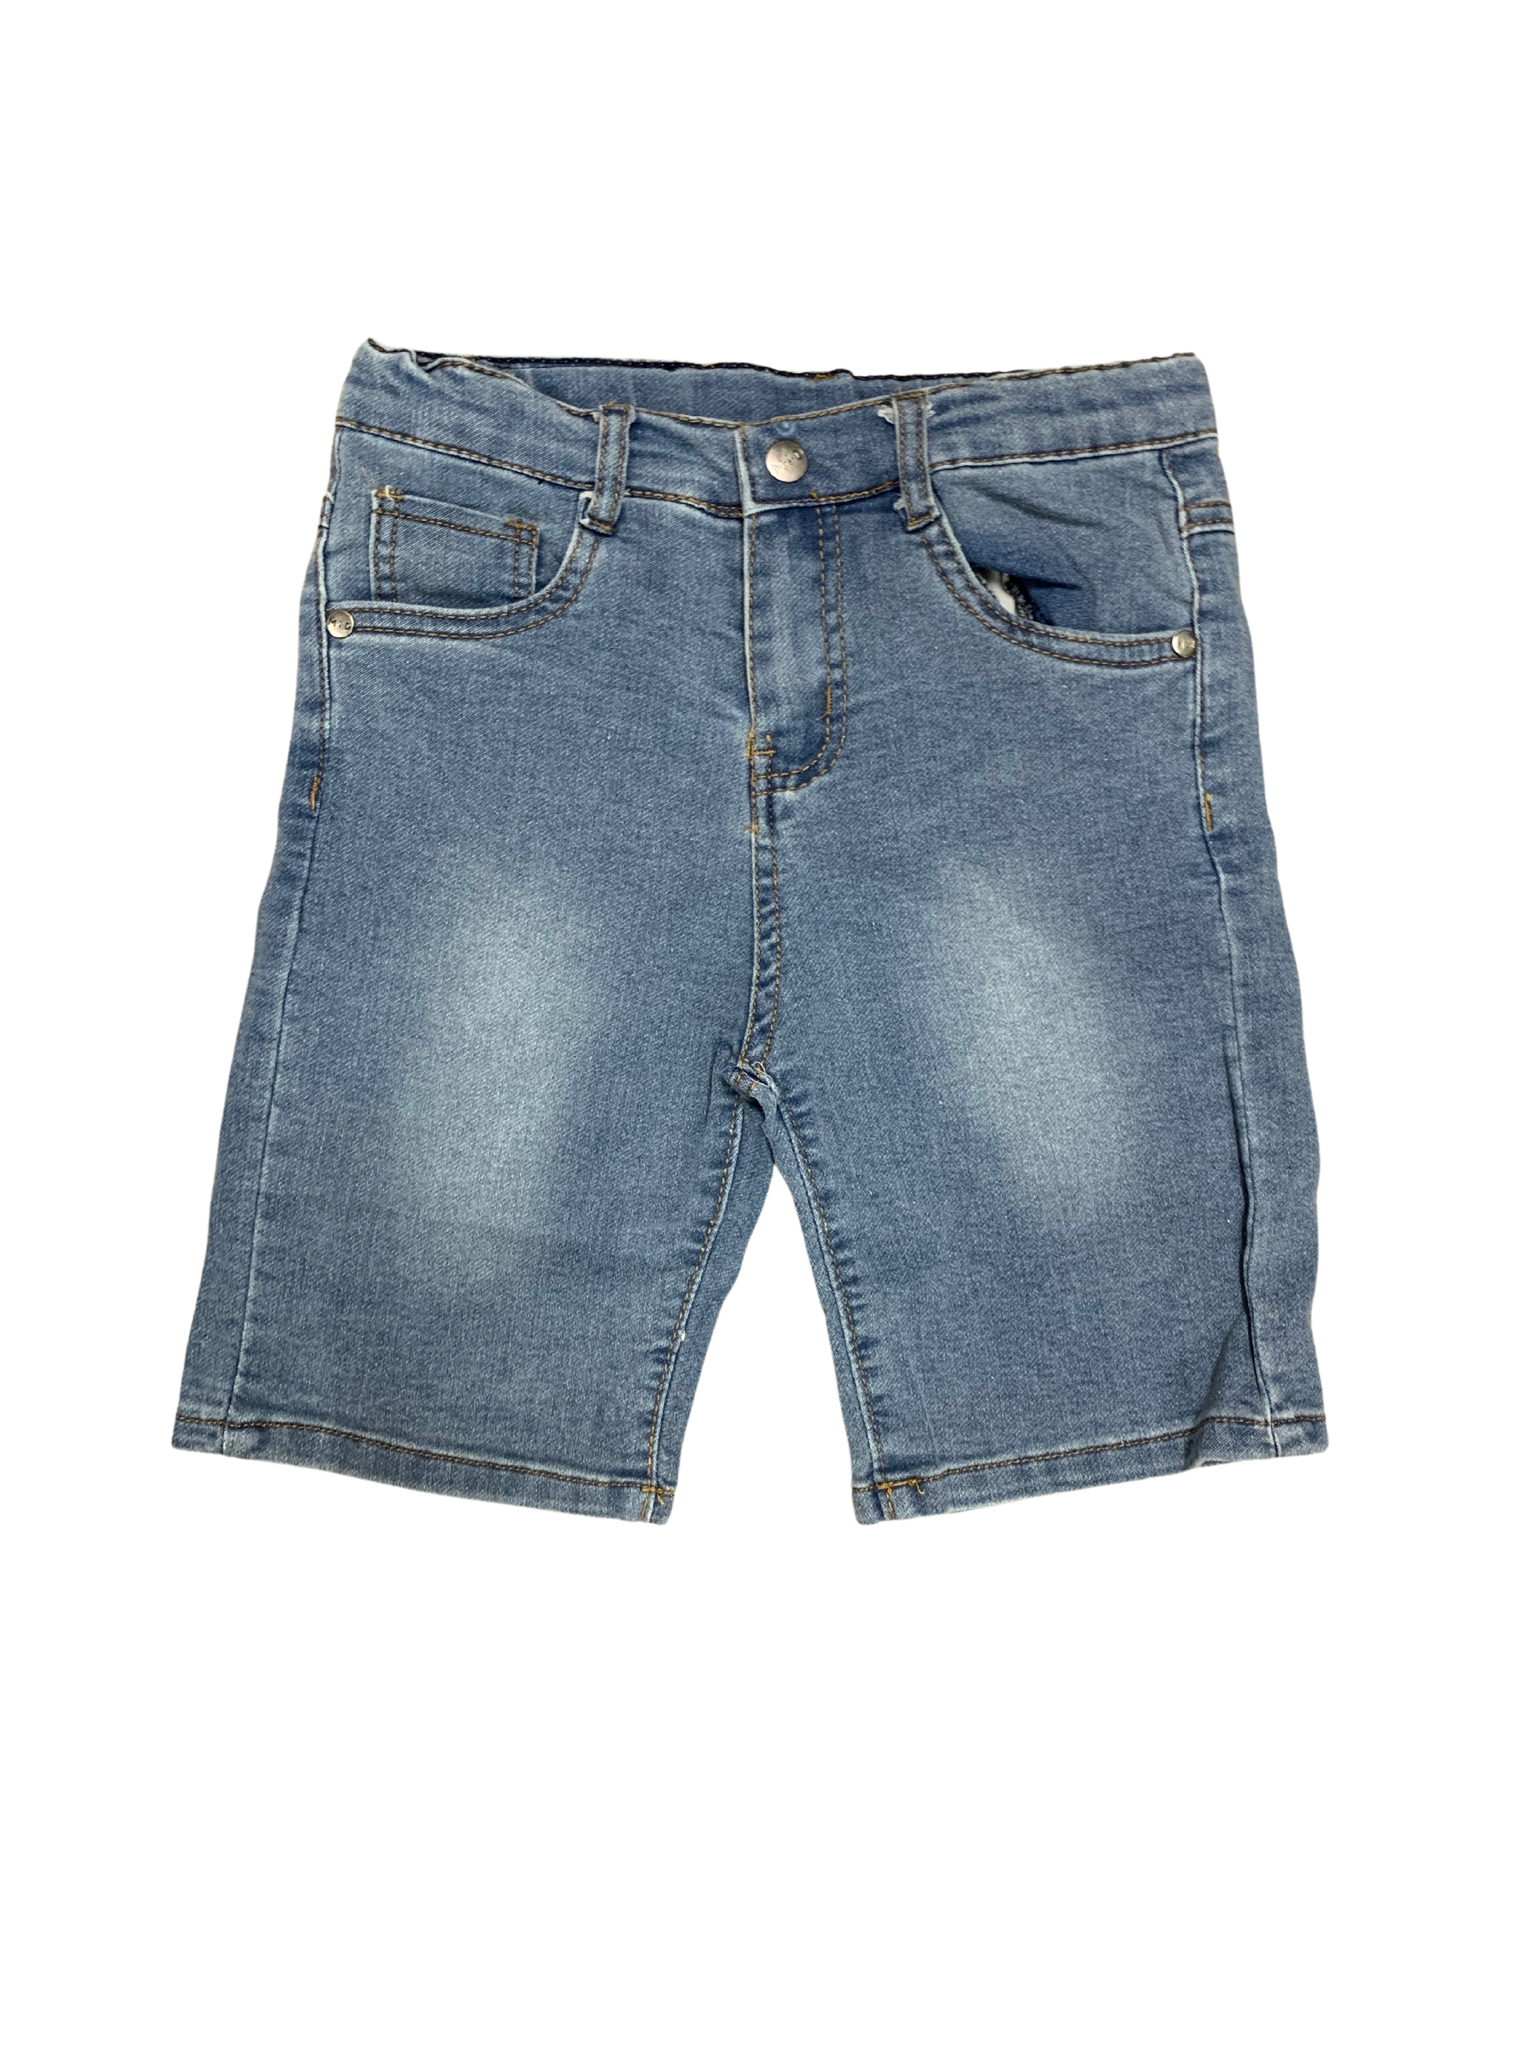 M.I.D - Short en jeans 6/7 ans